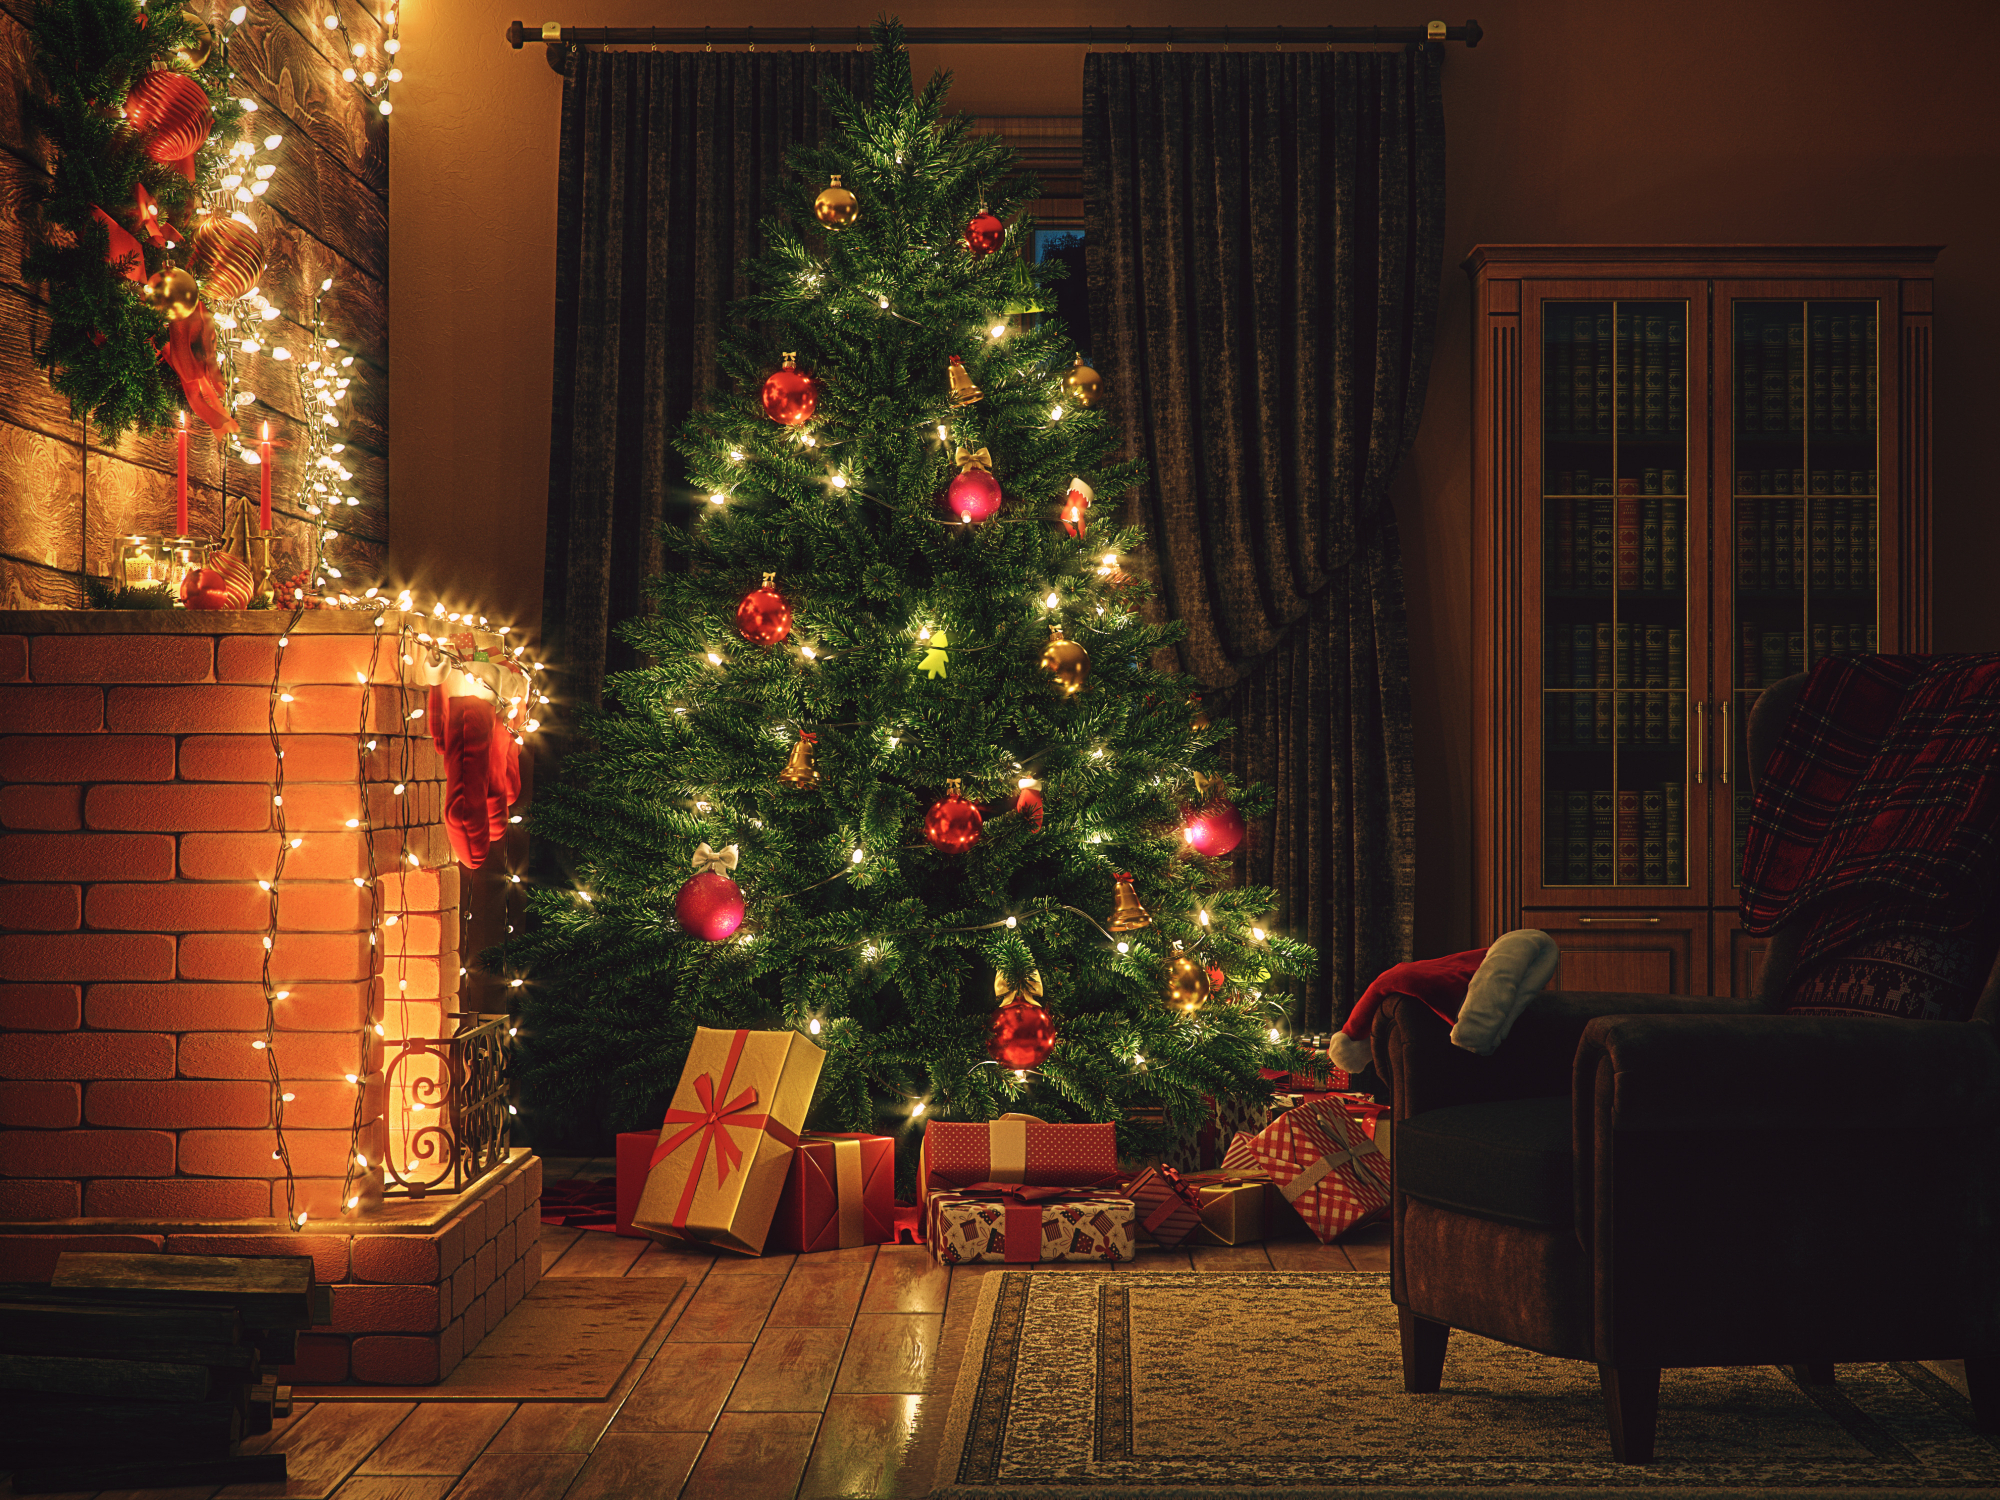 Έχετε αναρωτηθεί; – Πόσος καιρός χρειάζεται για να αναπτυχθεί ένα χριστουγεννιάτικο δέντρο;